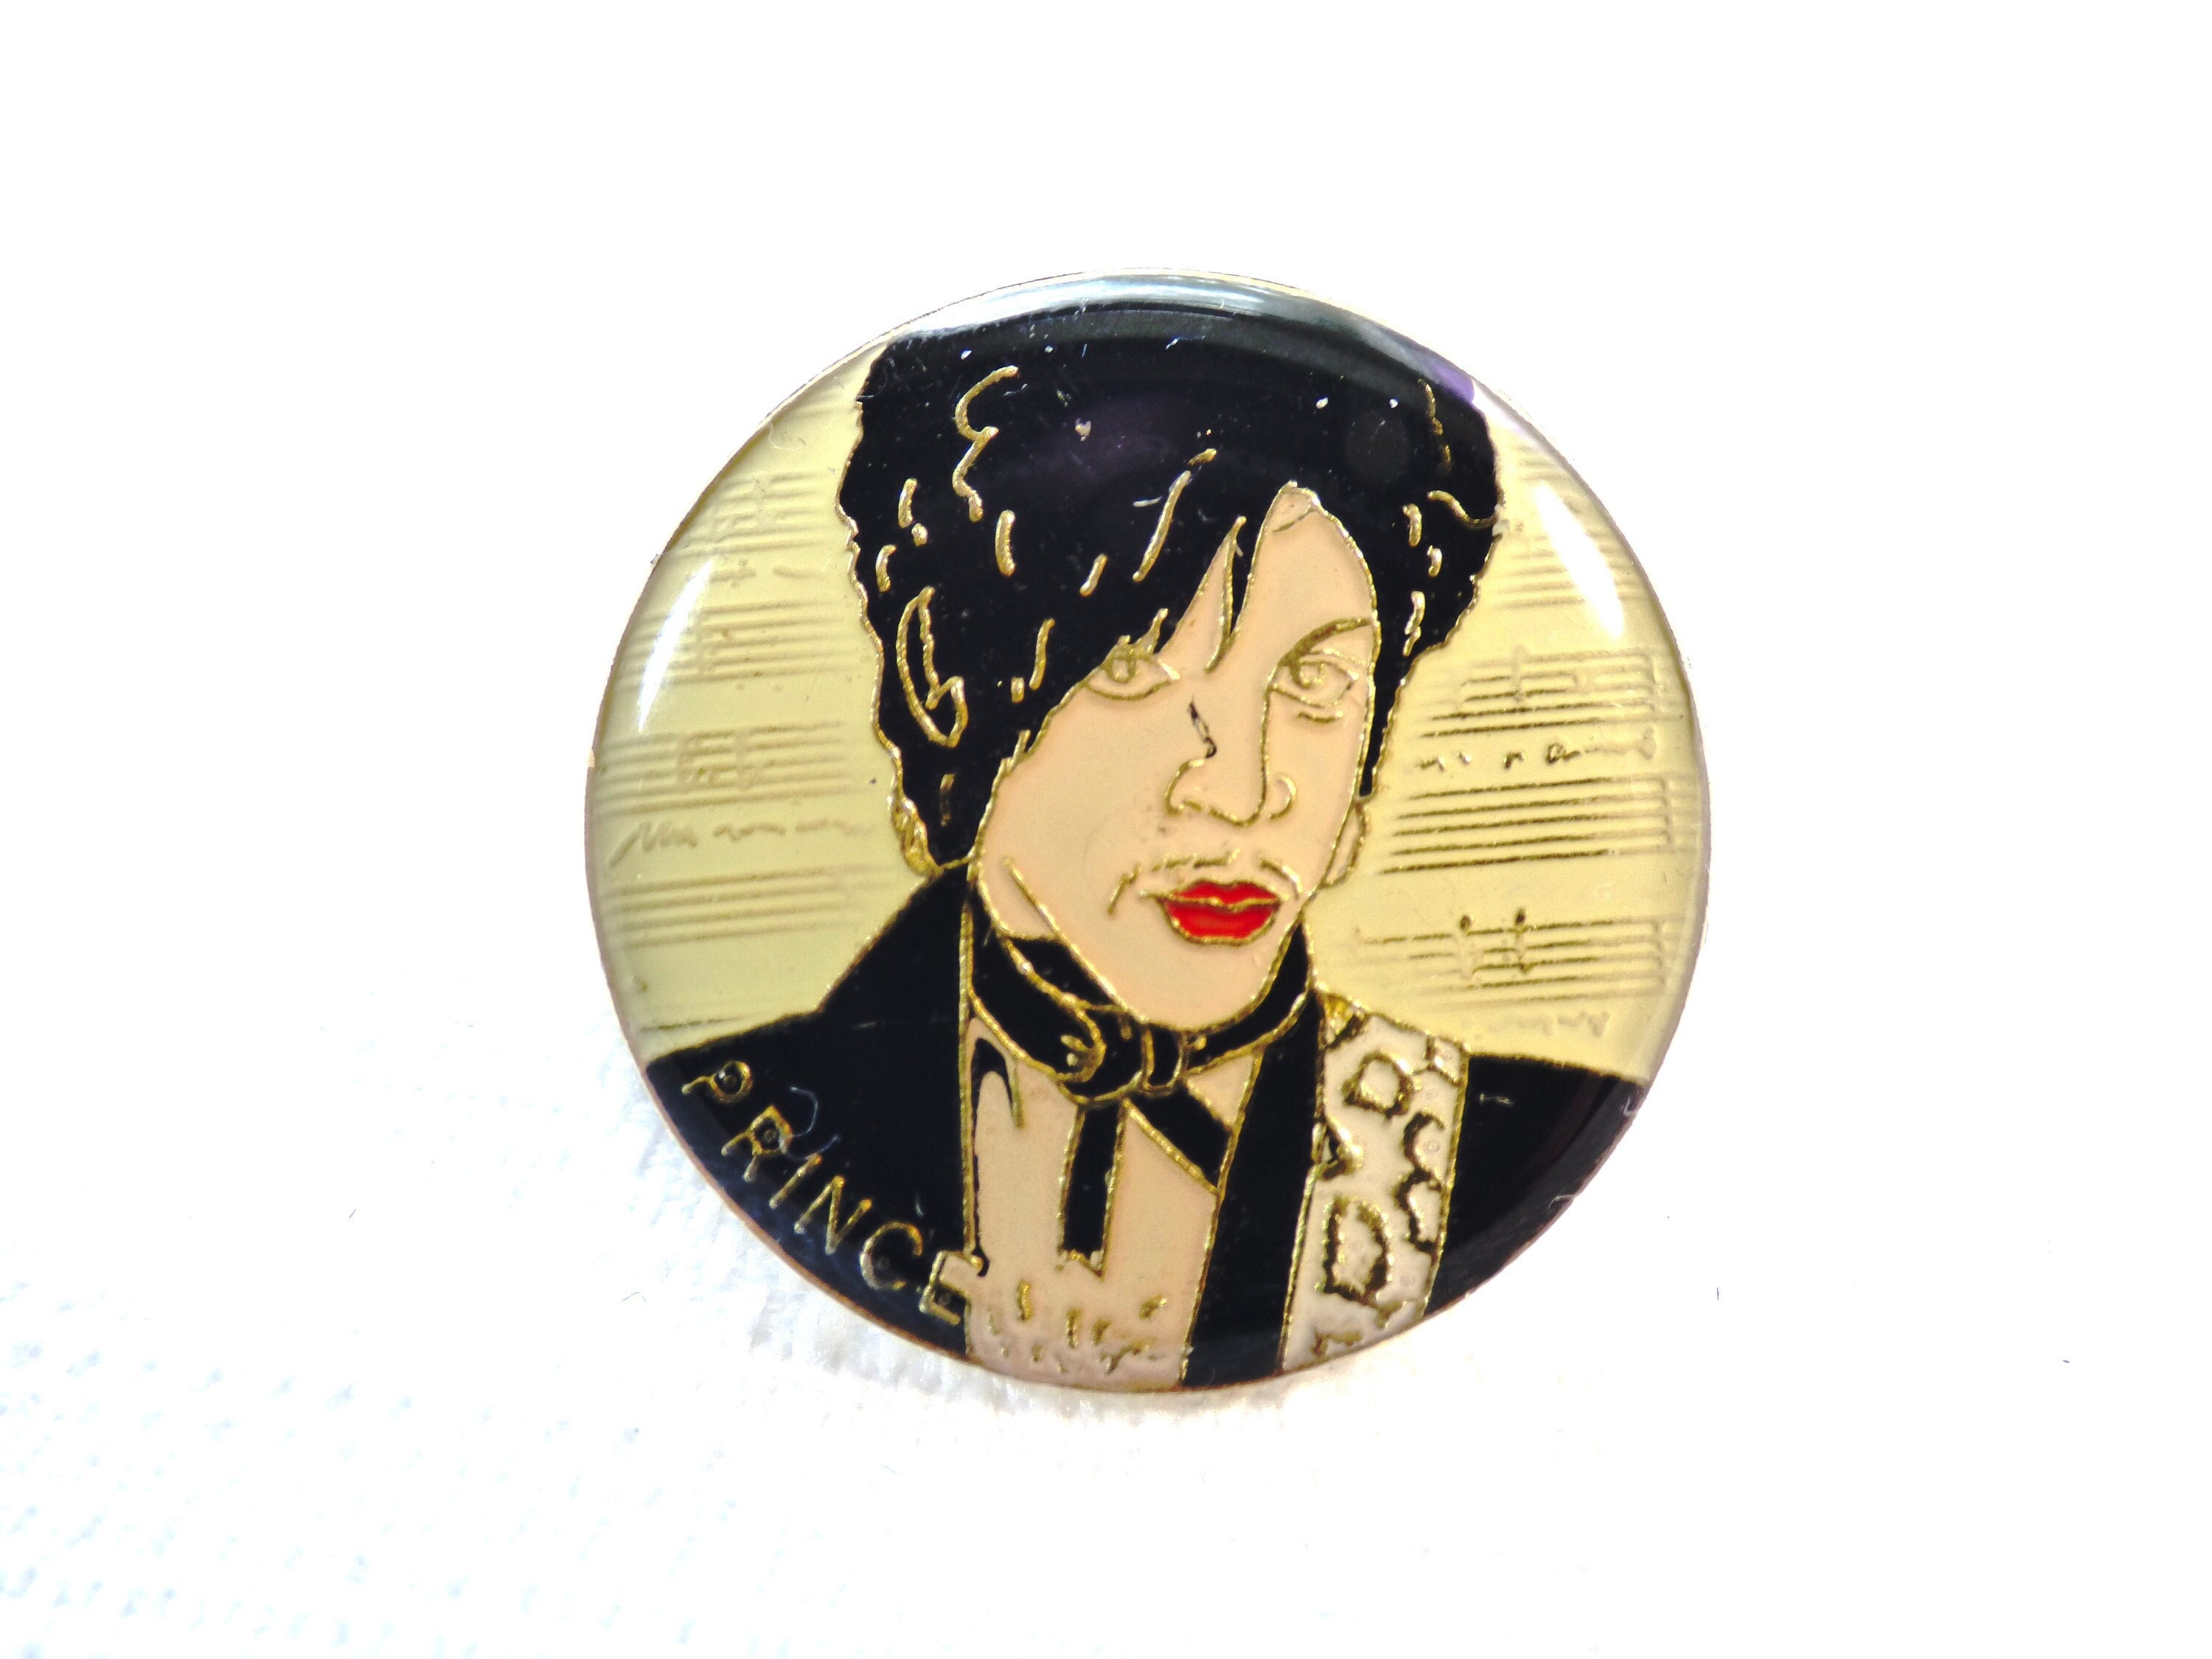 Prince 1999 Button Pin Set